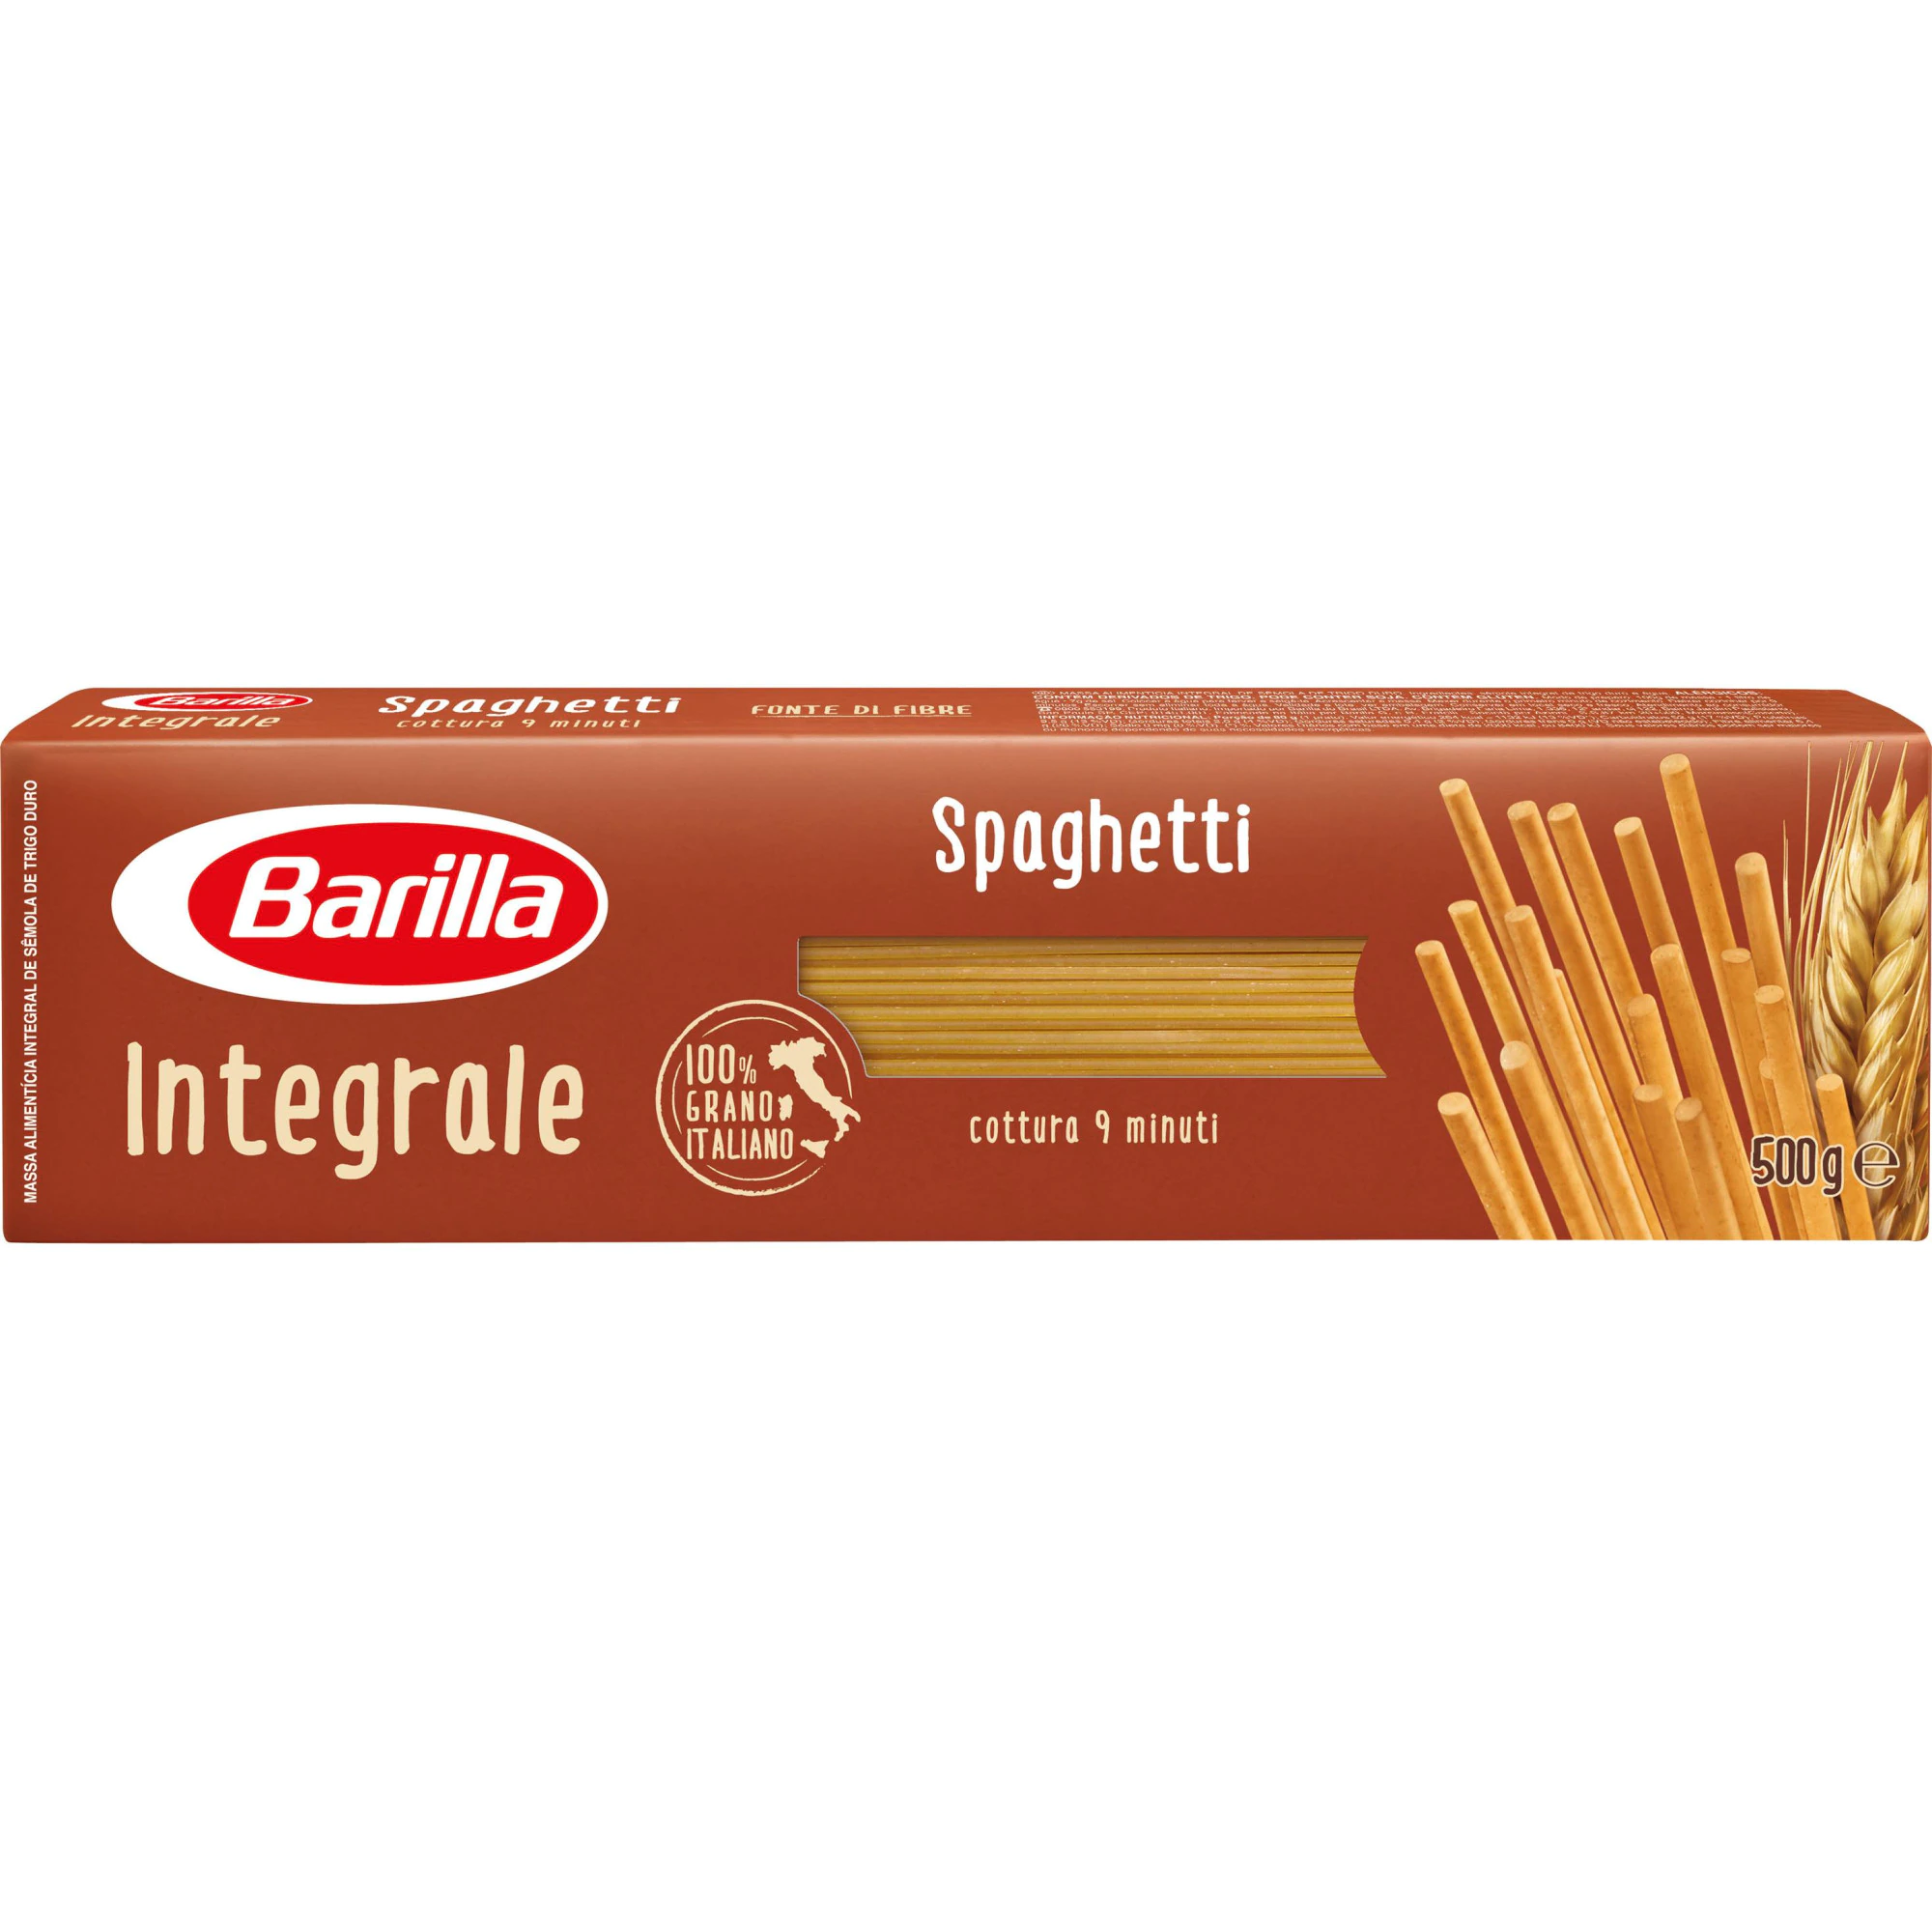 Spaghete Integrale Barilla Spaghetii 